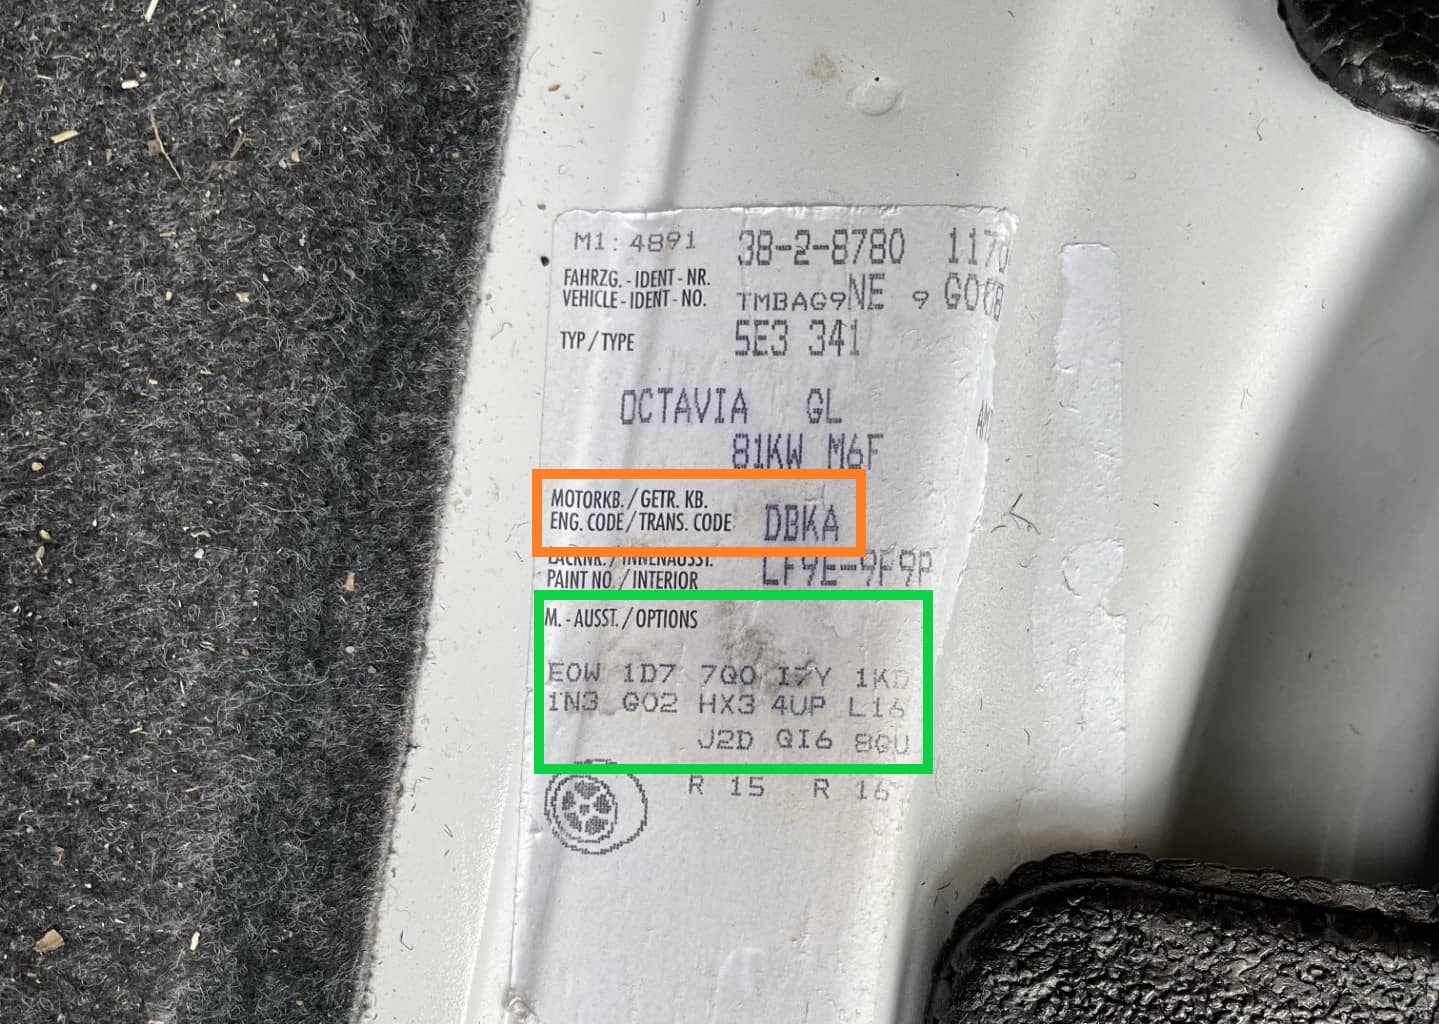 Motorkod och PR-nummer för en Skoda Octavia på en dekal under bagagerumsmattan.